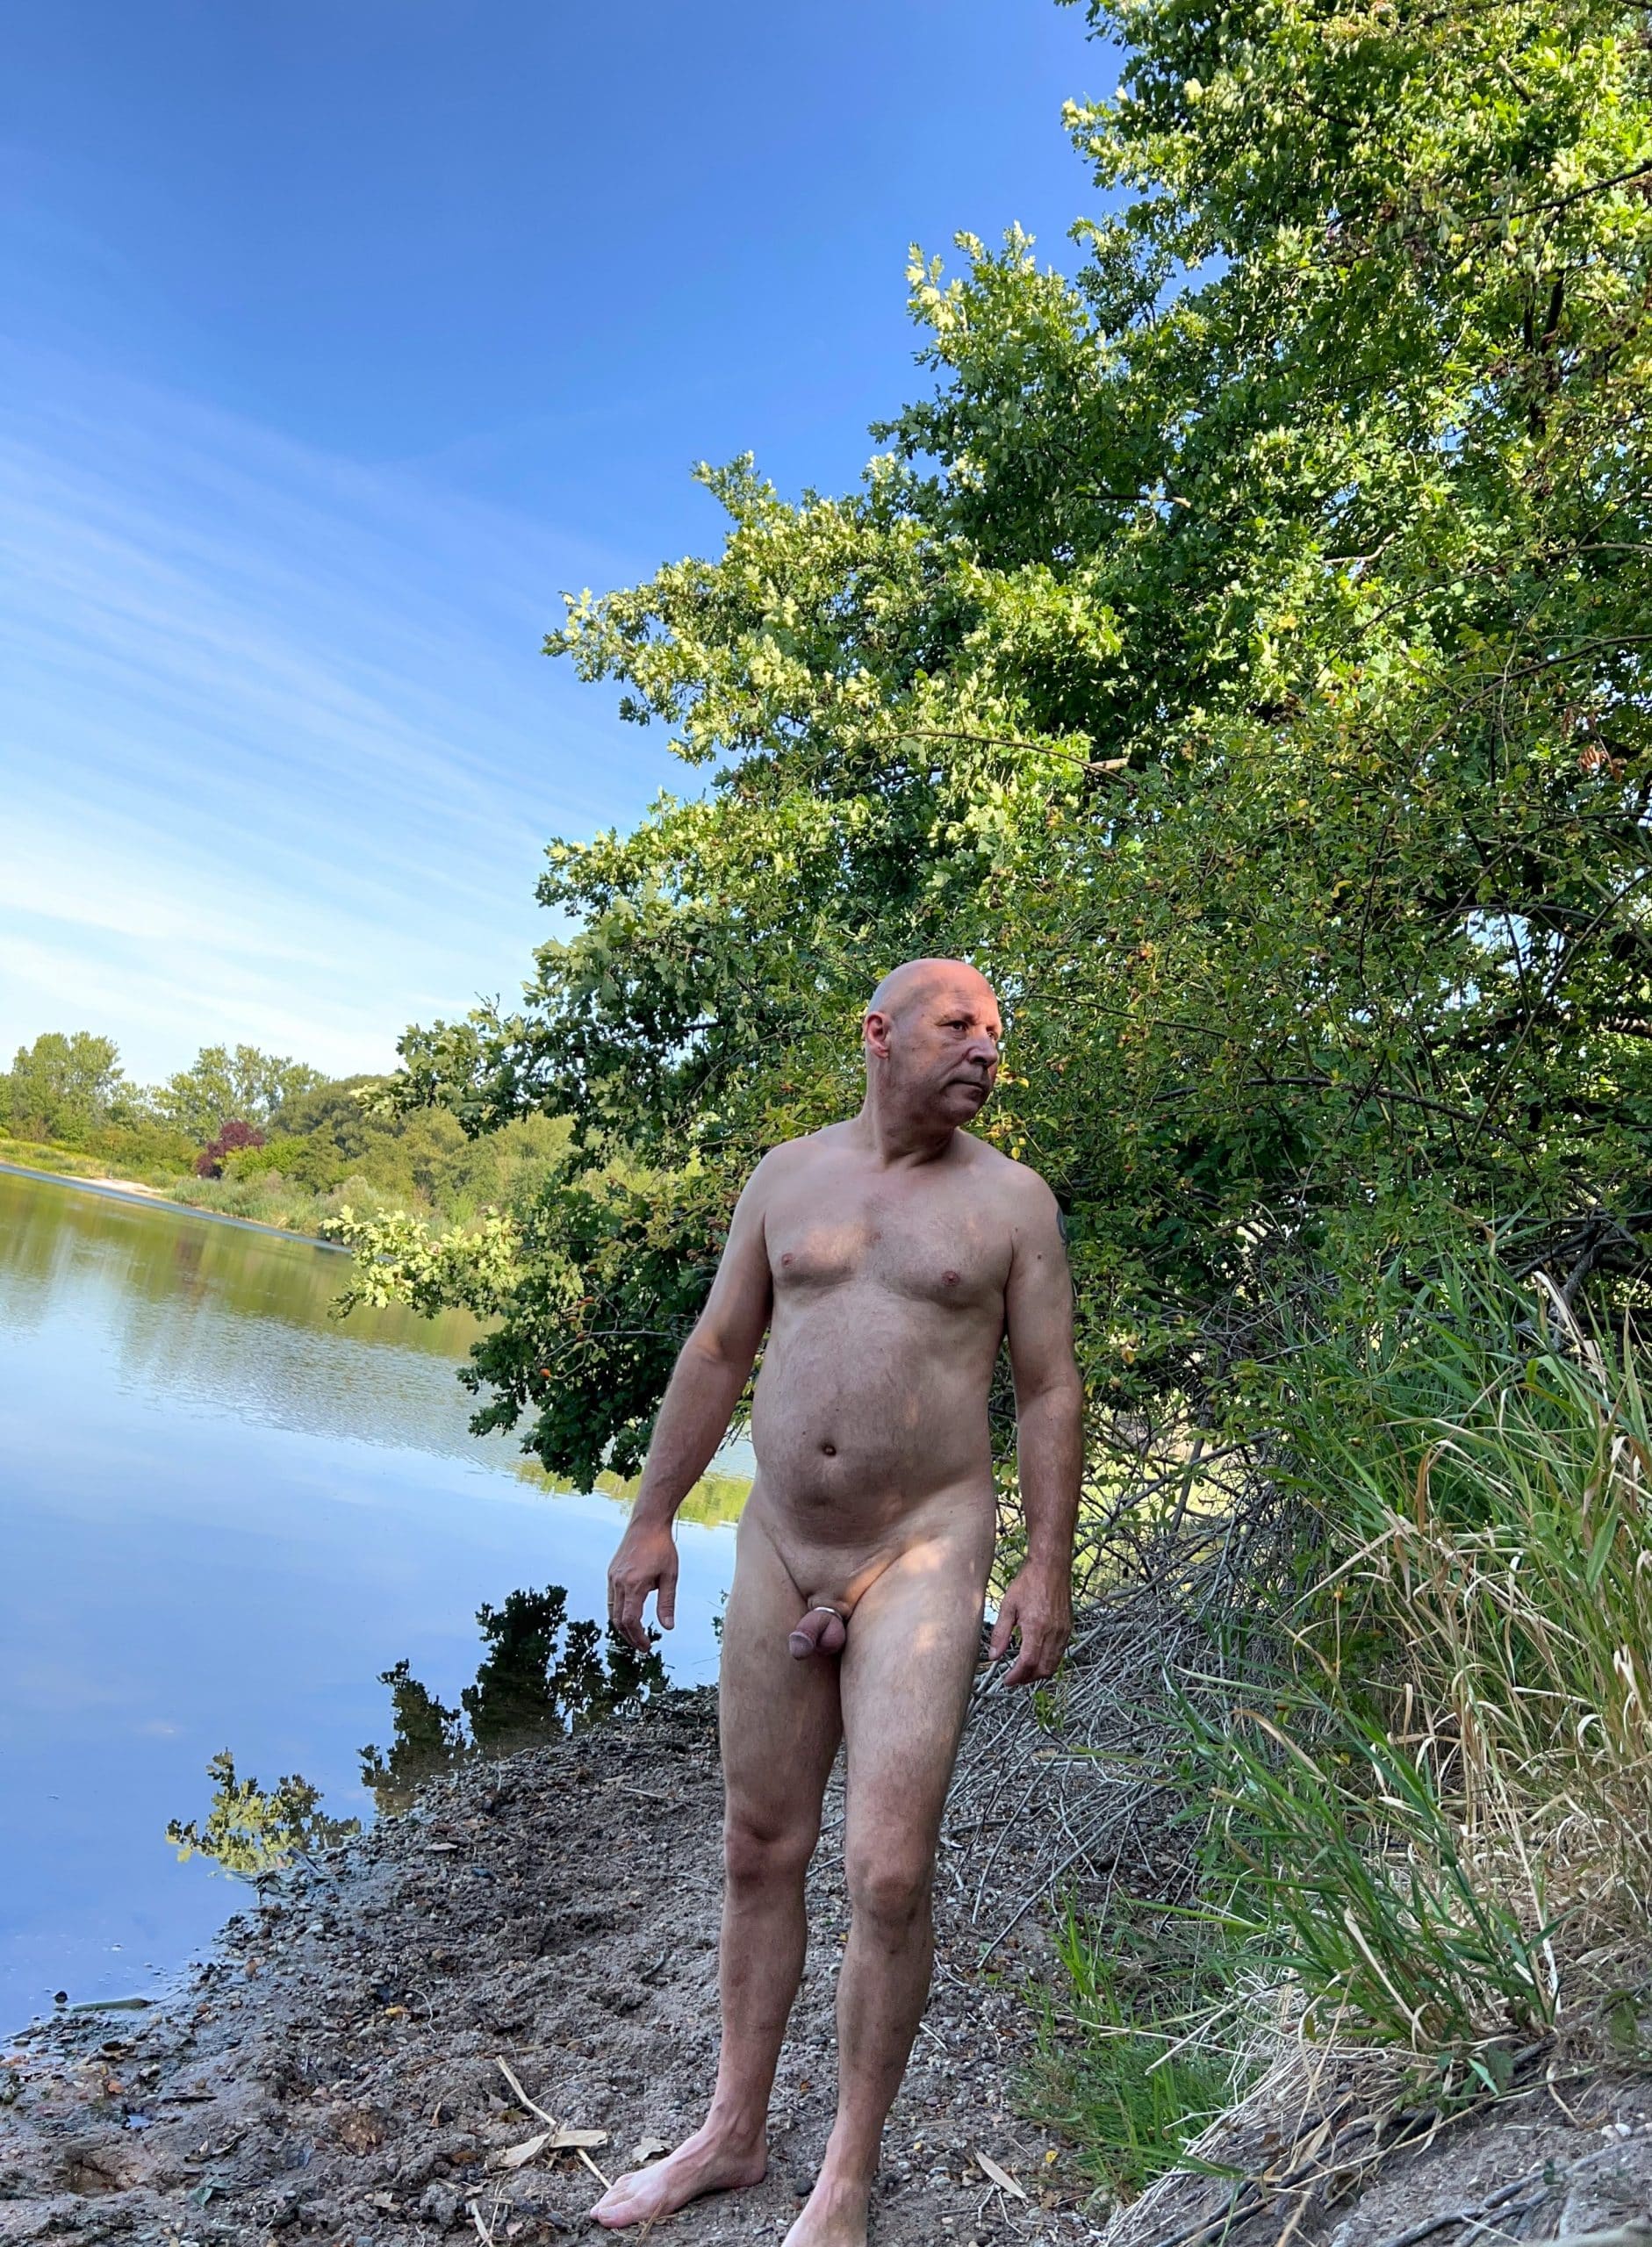 Real Amateurs Public Nudity Pics Dick Flash Pics - Nackt am See